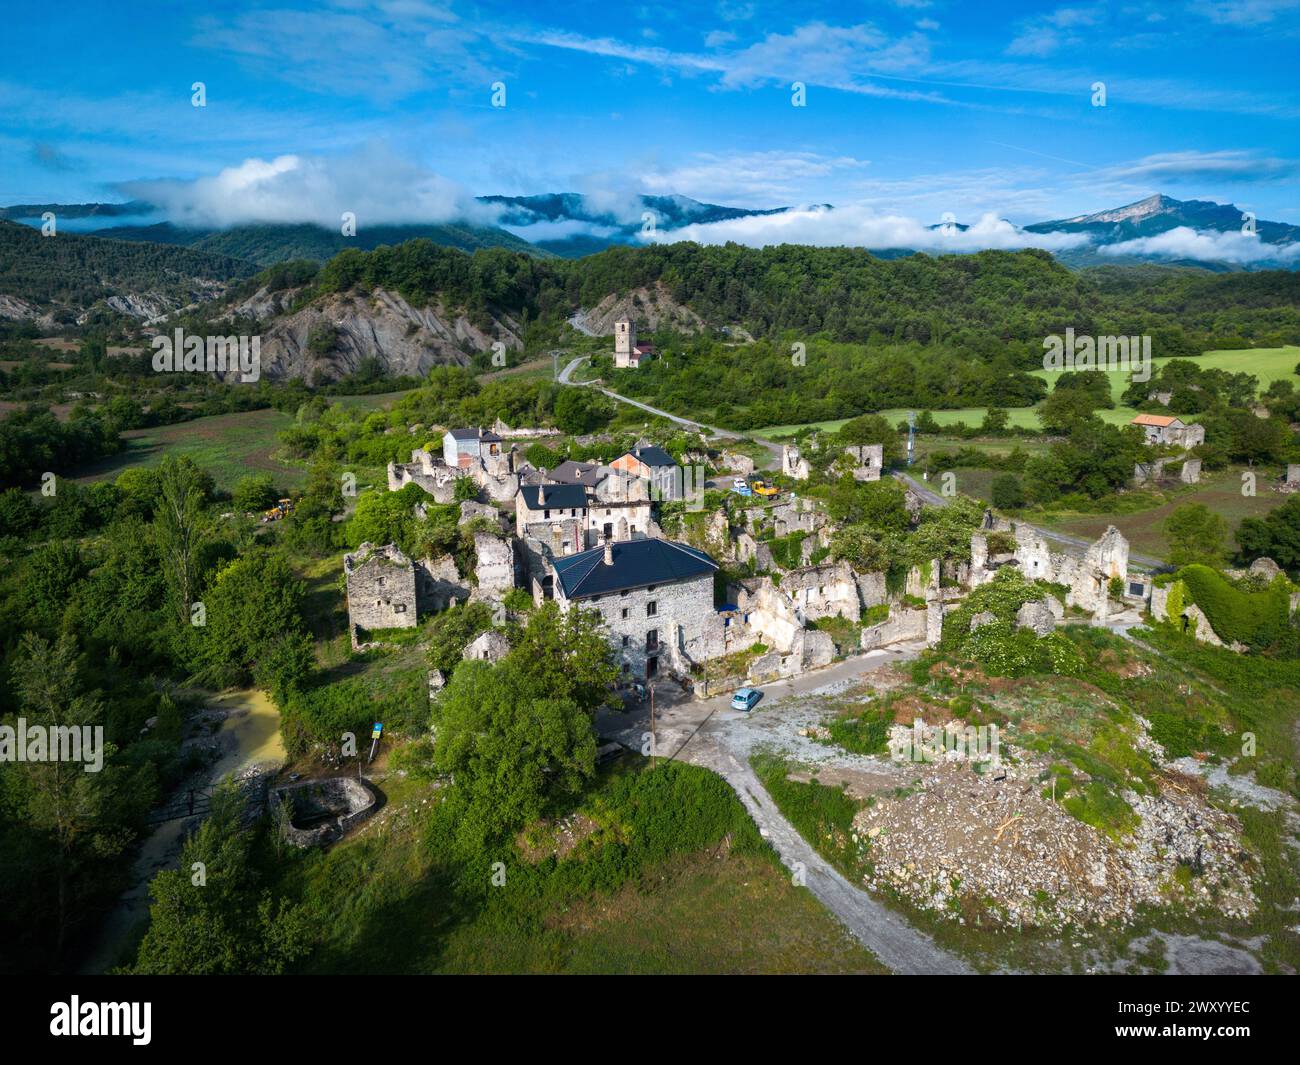 Espagne, Janovas : vue aérienne du village en reconstruction. Tout ce qui restait de cet ancien village dans les Pyrénées aragonaises étaient des ruines : le v Banque D'Images